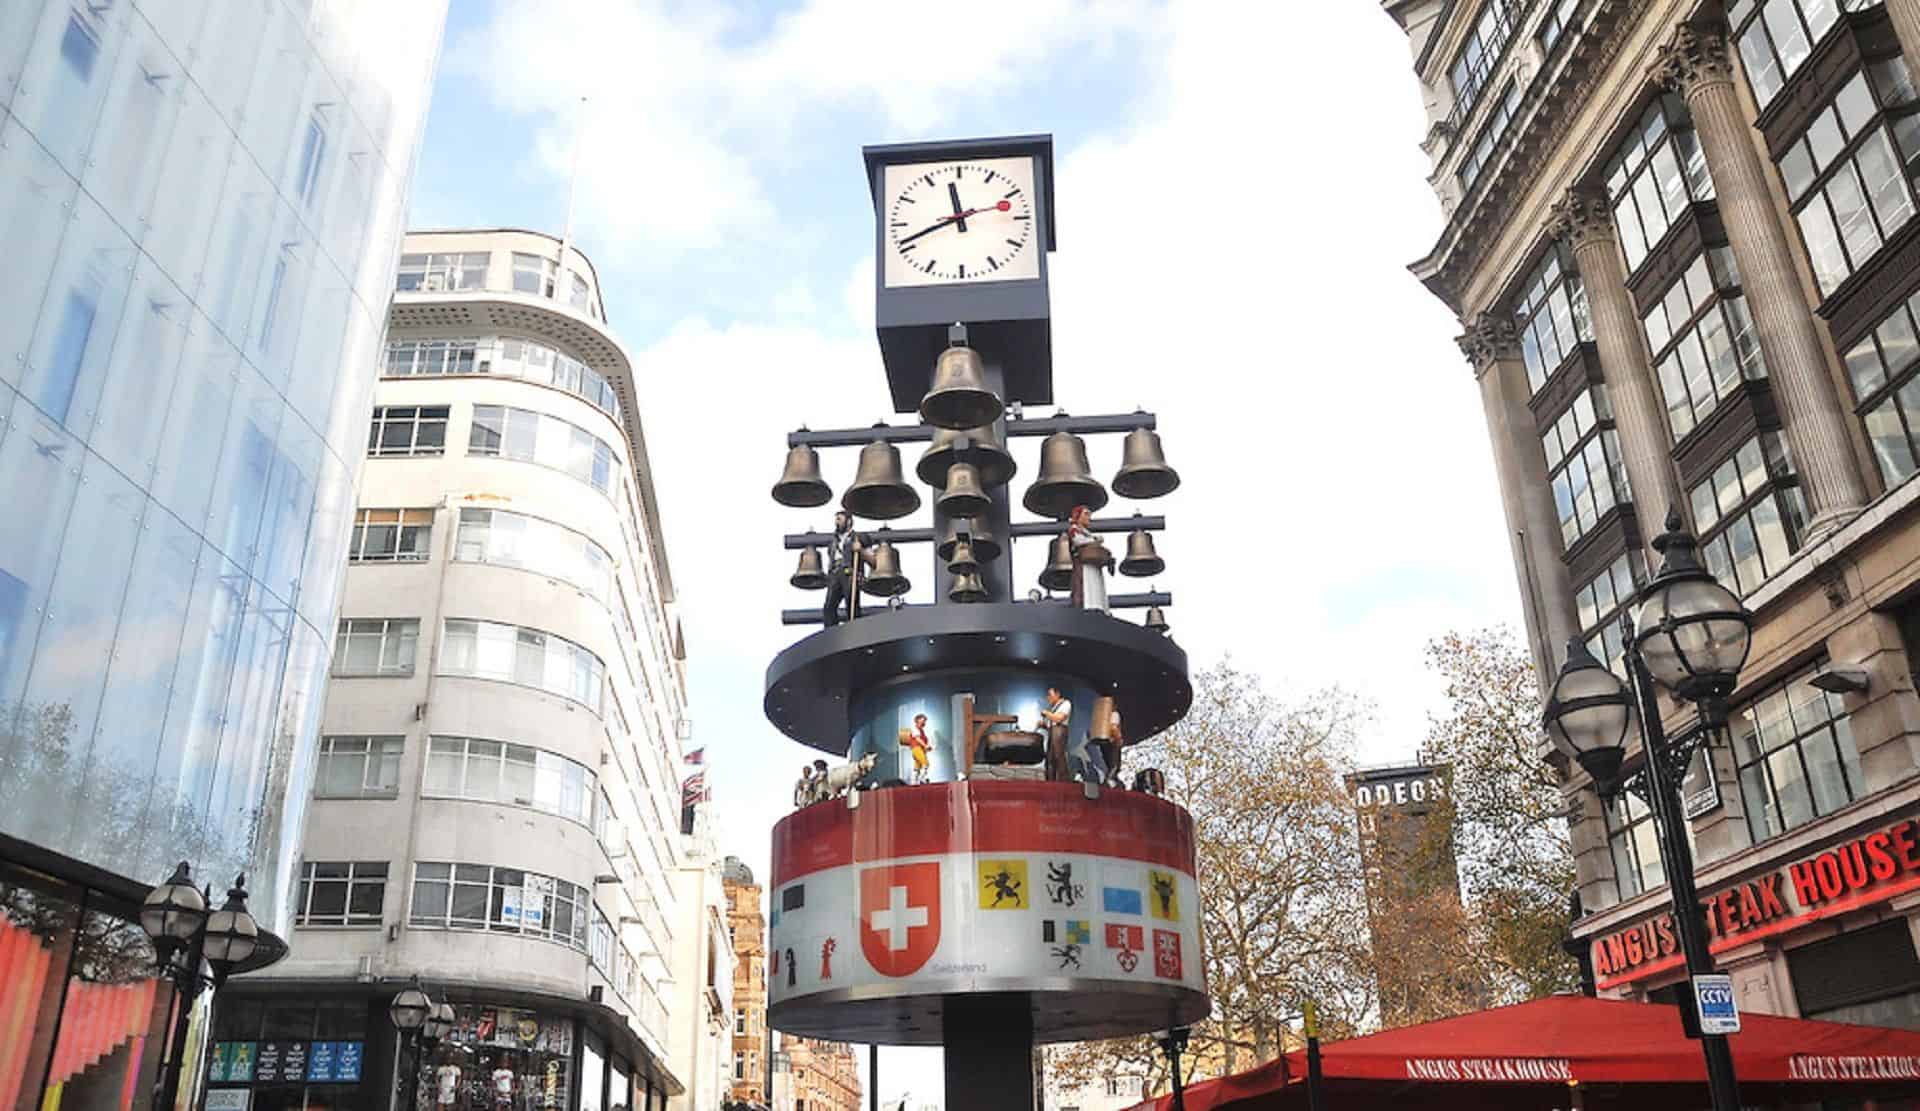 Swiss Glockenspiel in UK